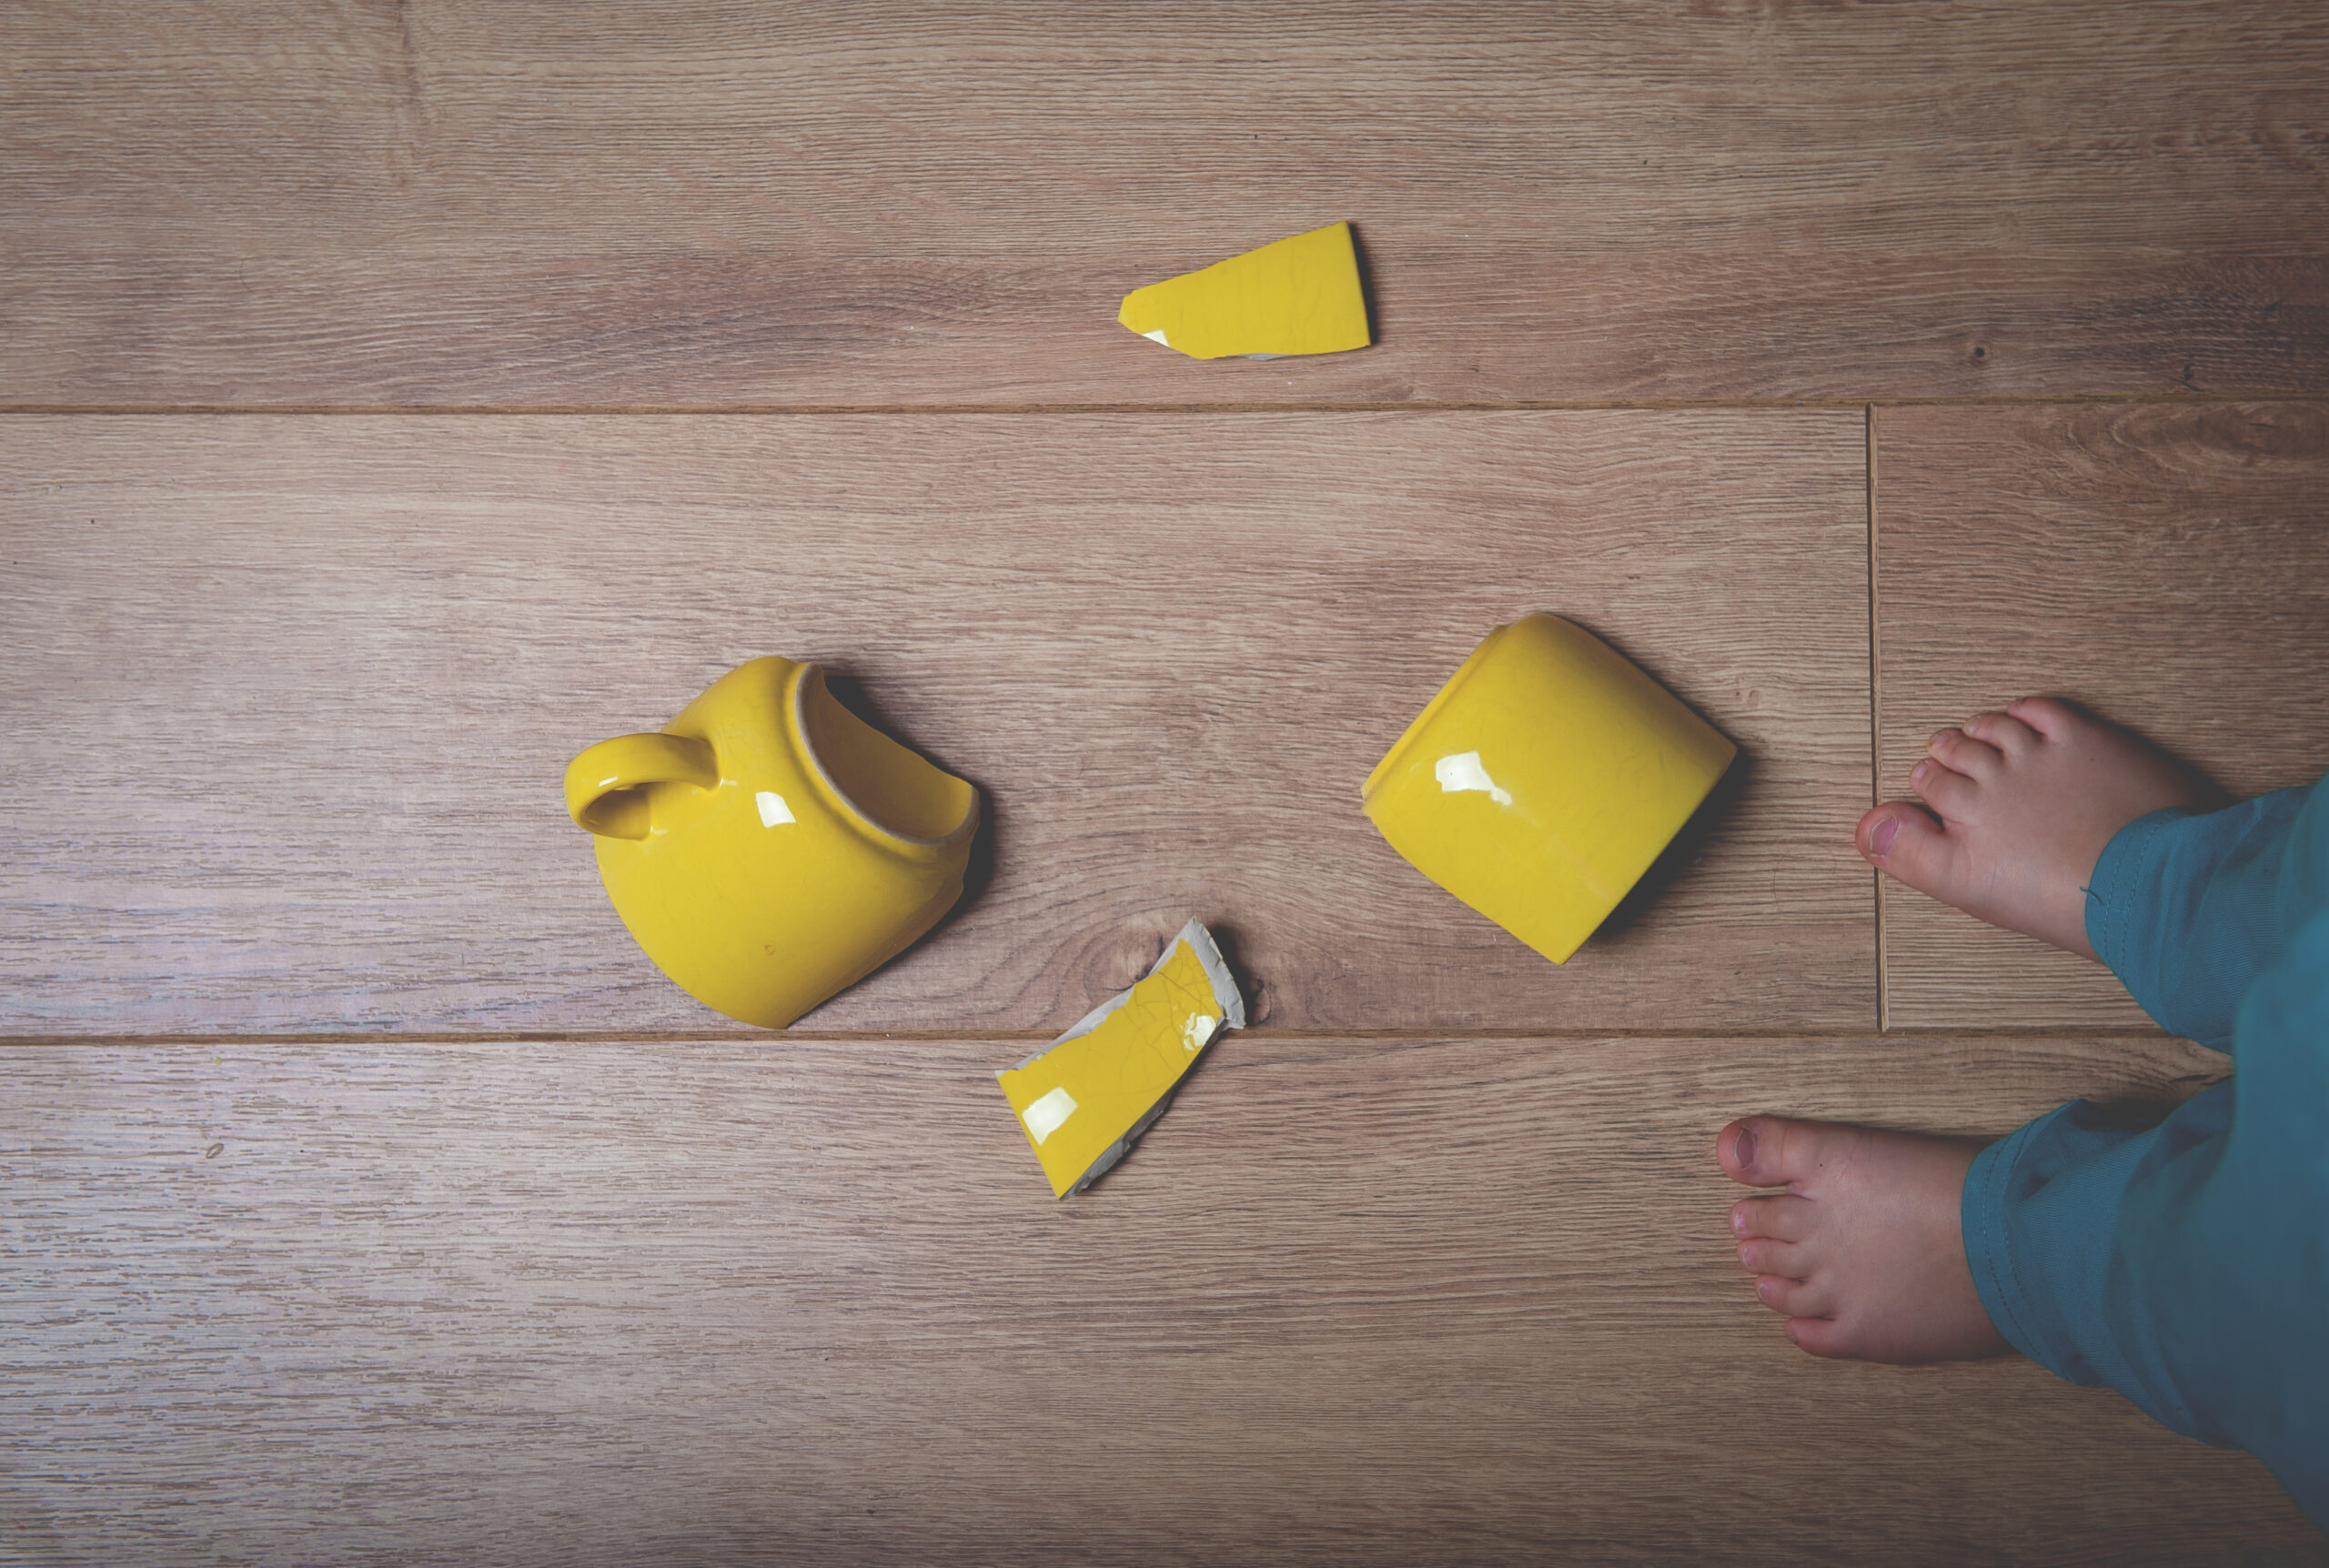 Broken yellow cup on the floor.